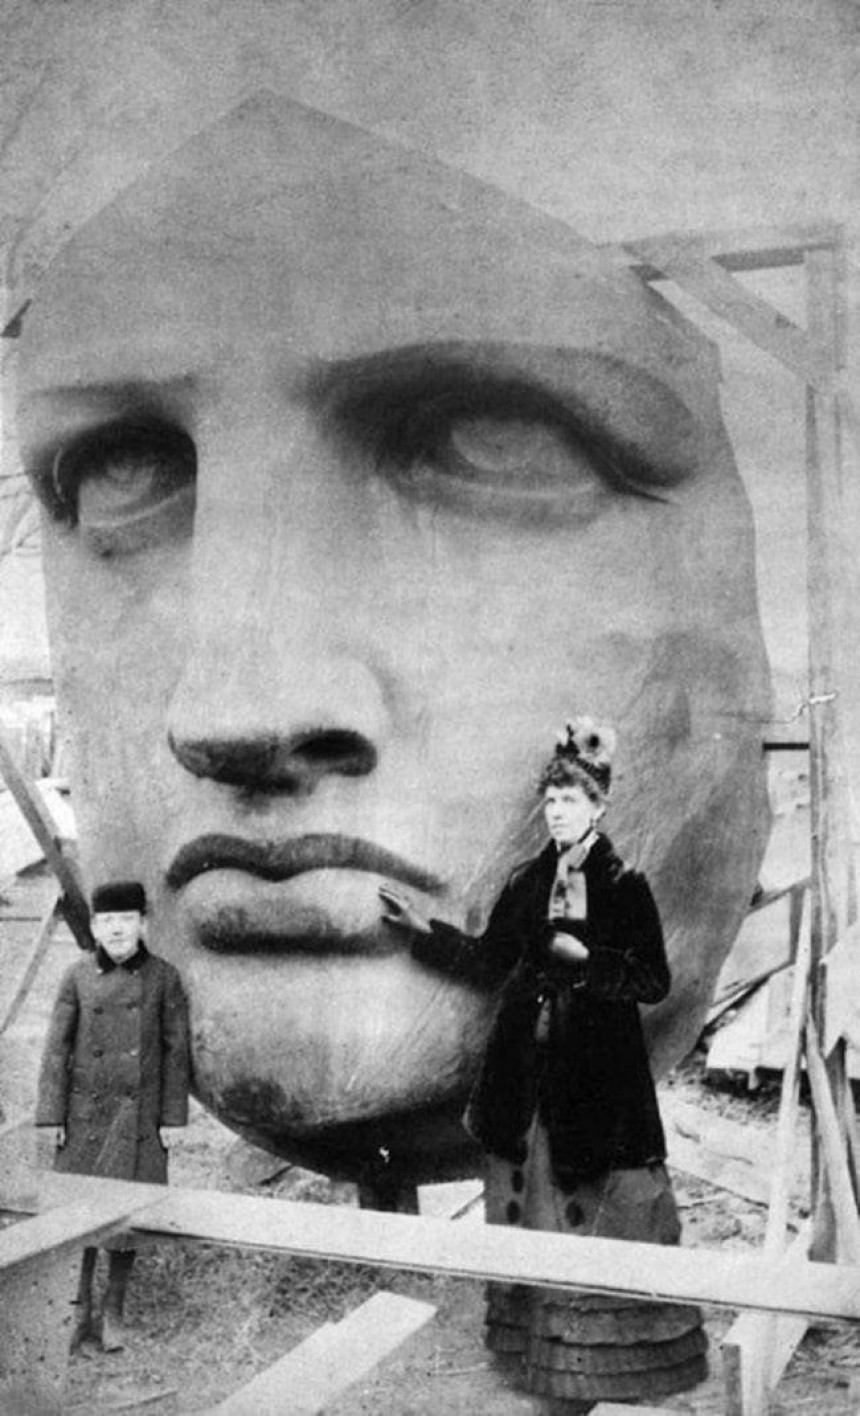 Зустріч із історією: Статуя Свободи 1886 року – неповторний момент